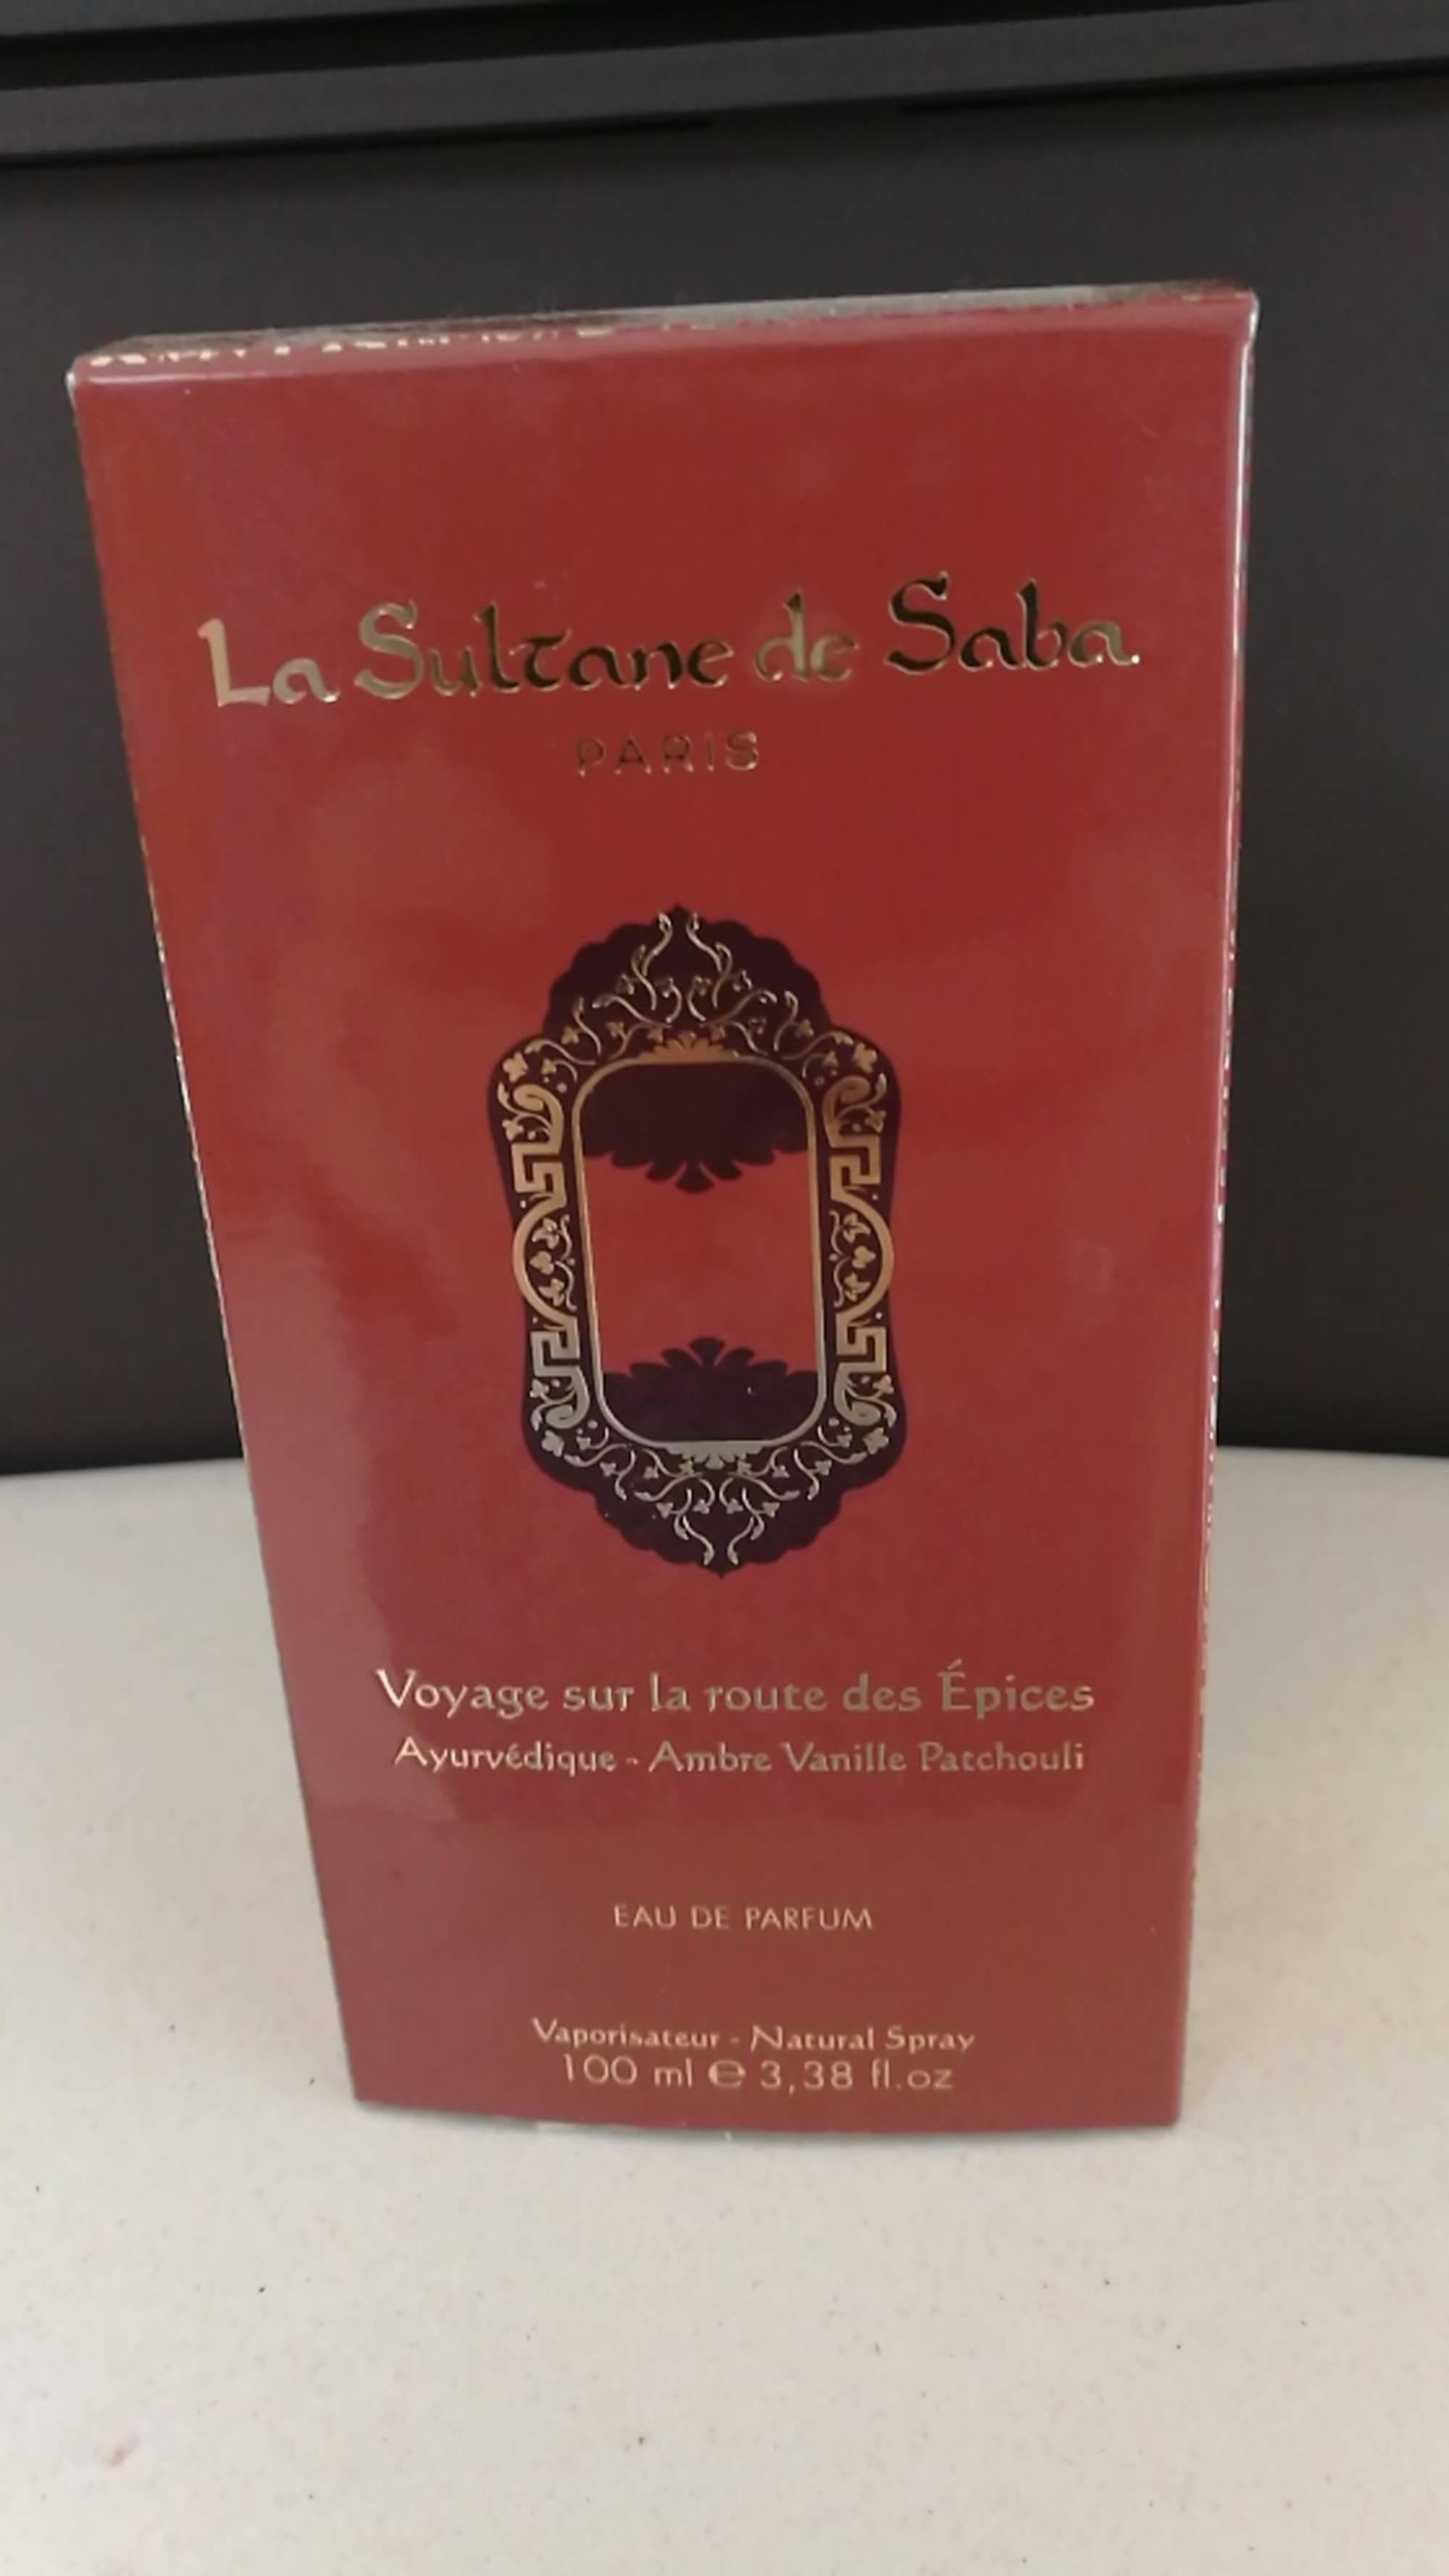 LA SULTANE DE SABA - Voyage sur la route des épices - Eau de parfum